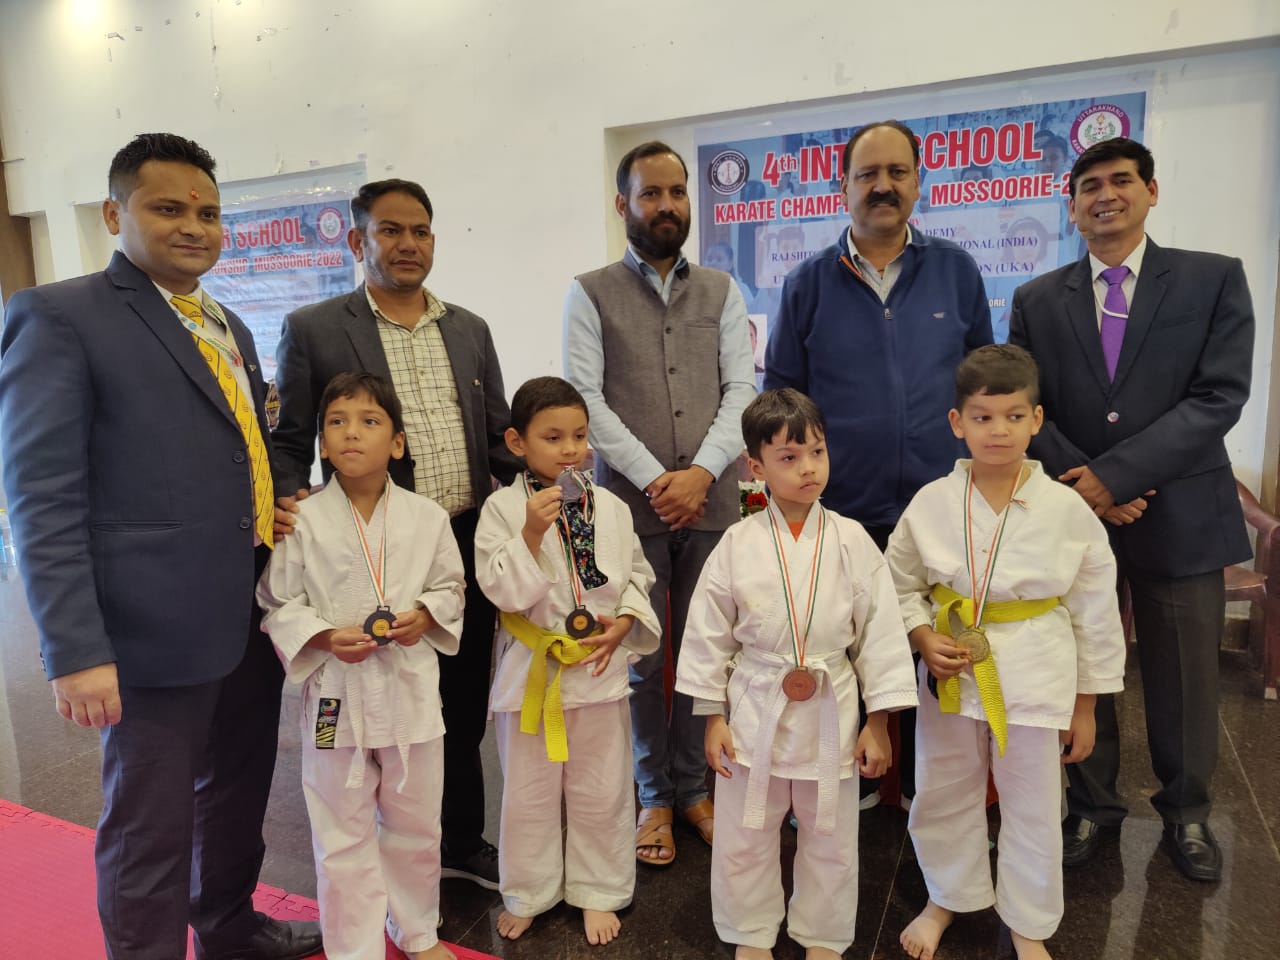 मसूरी : इंटर विद्यालय कराटे प्रतियोगिता में राज कराटे अकादमी के तत्वावधान में आयोजित बच्चों ने दिखाया दम